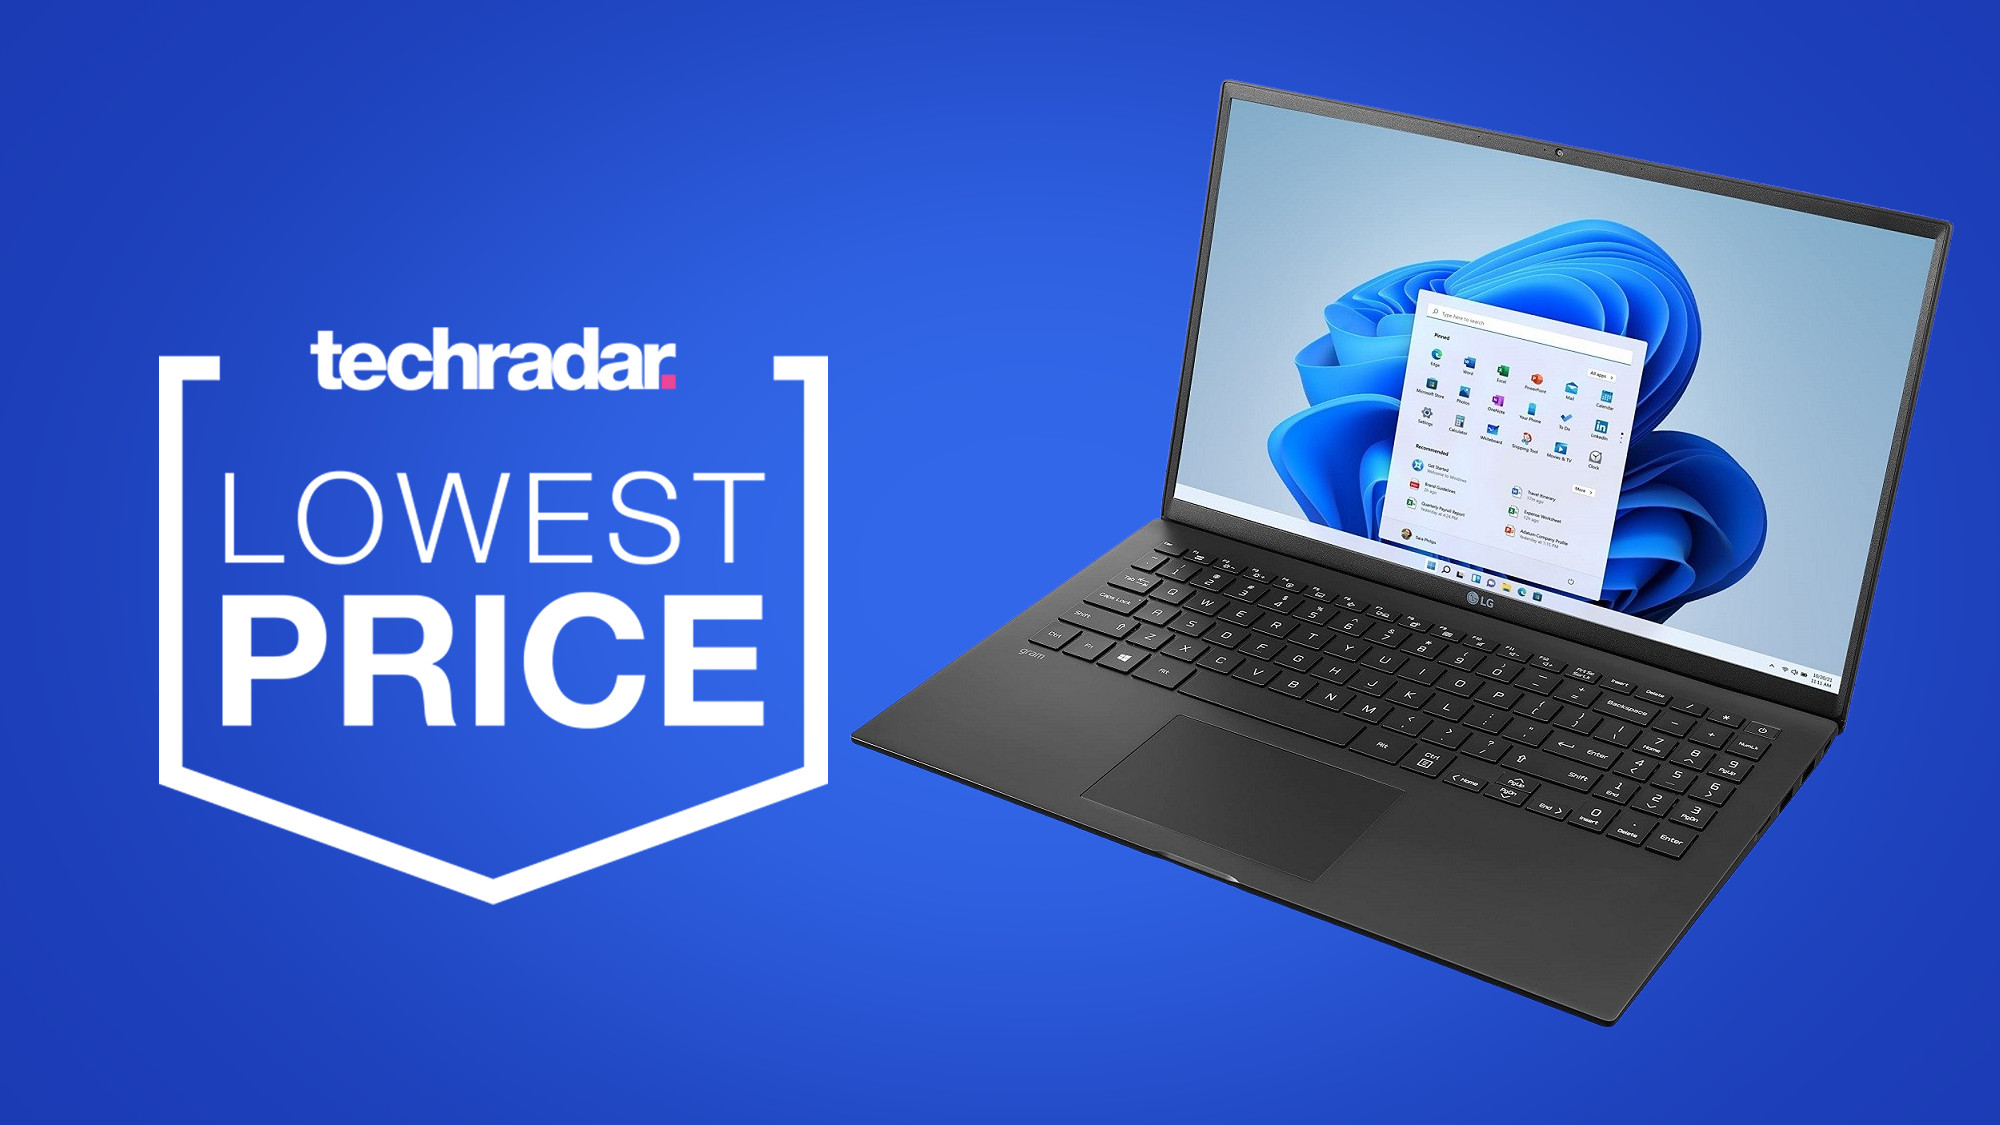 Невероятно легкий ноутбук LG стал самым дешевым в этот Prime Day